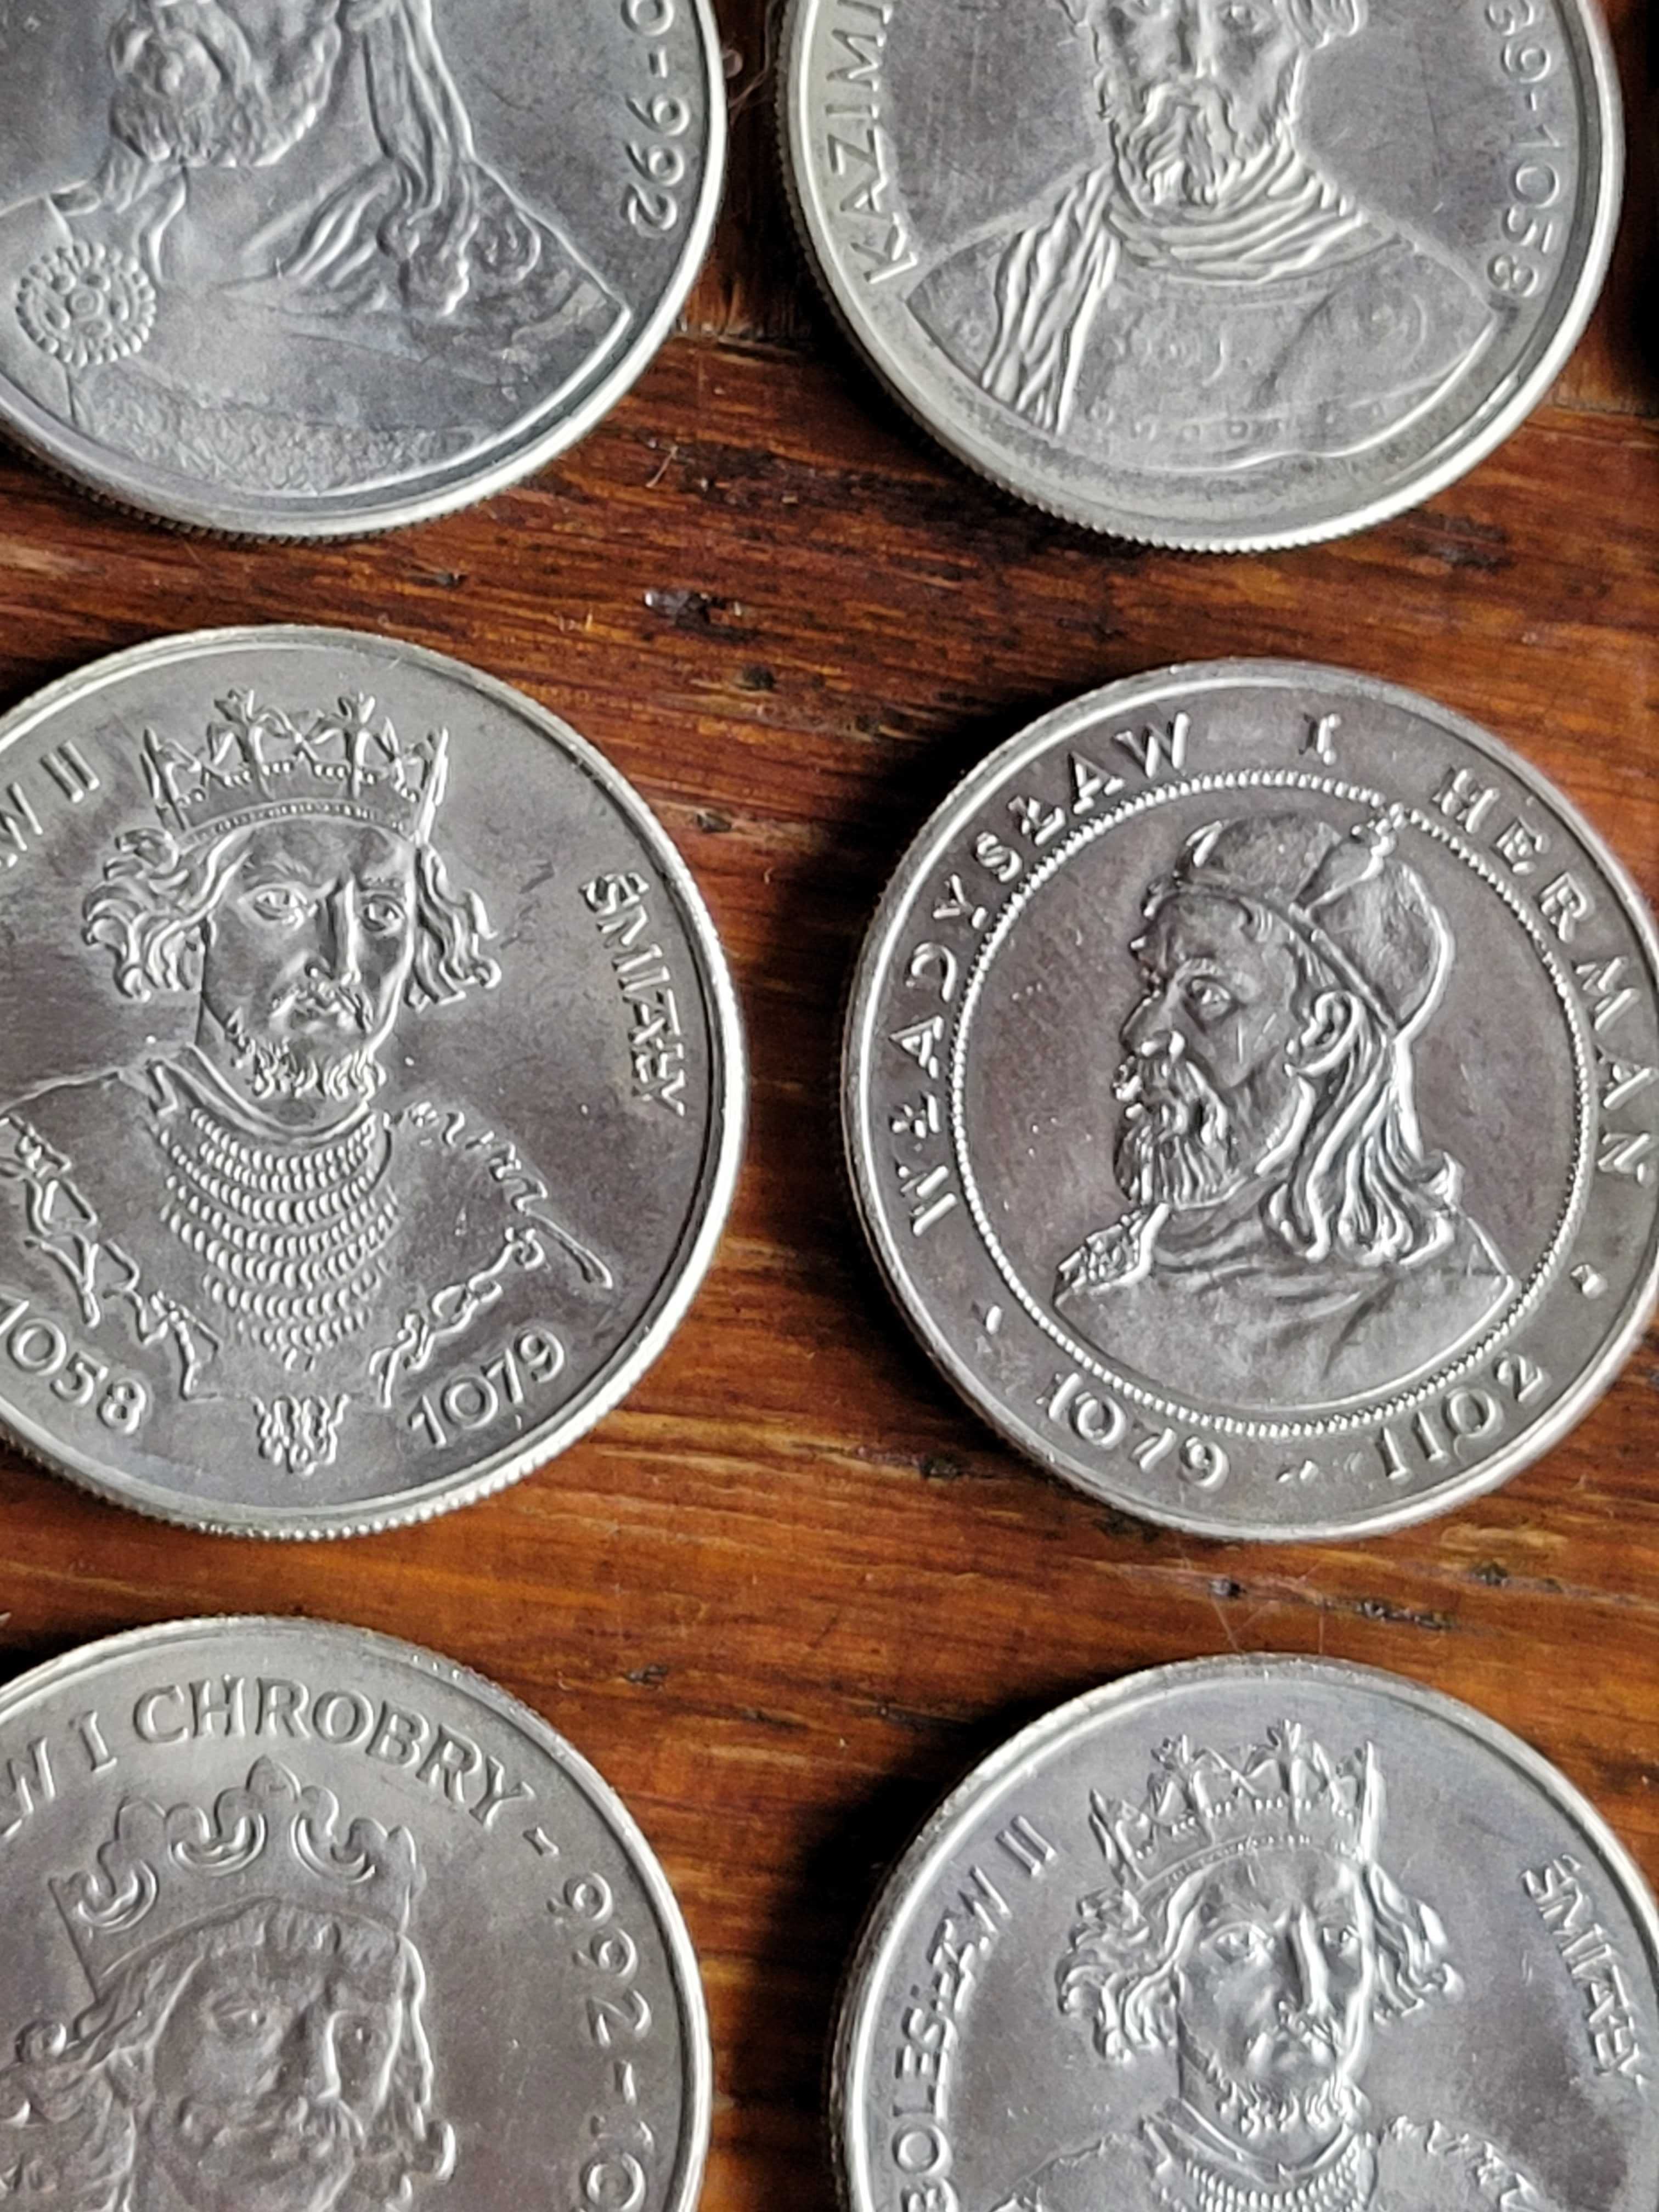 Stare monety z okresu PRL,Polscy Królowie